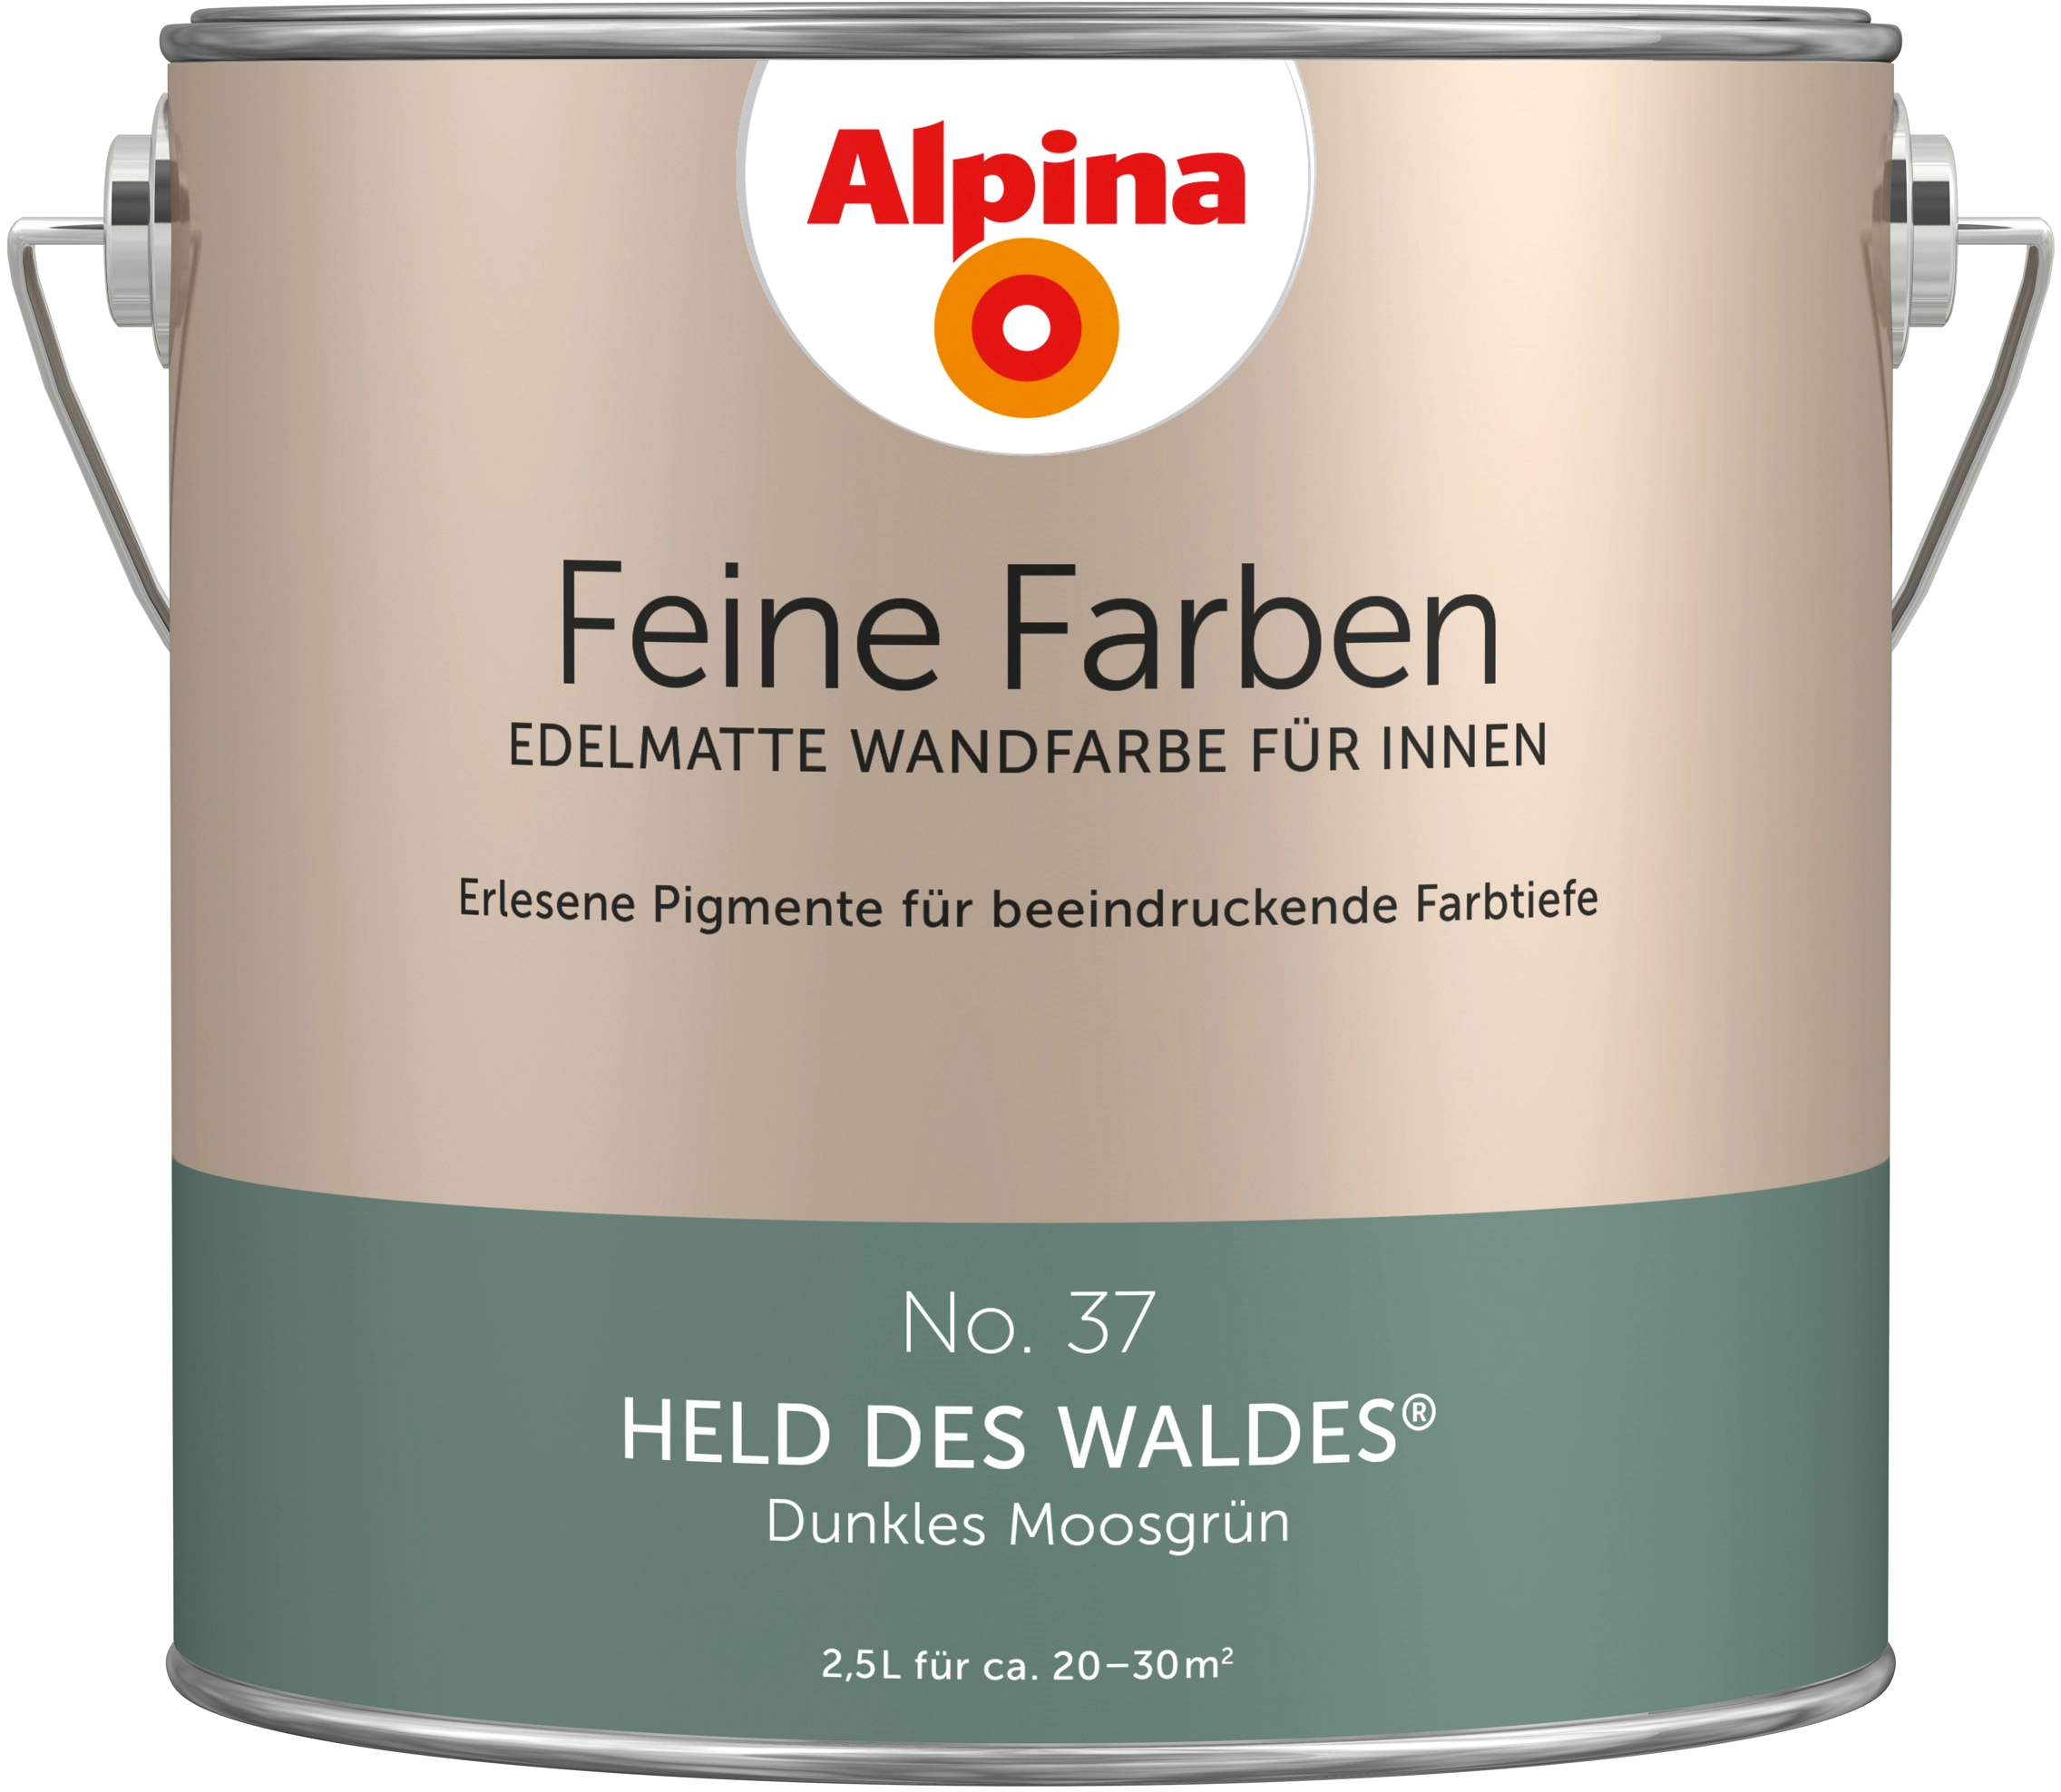 65 Farbfamilie Braun - Alpina Feine Farben-Ideen